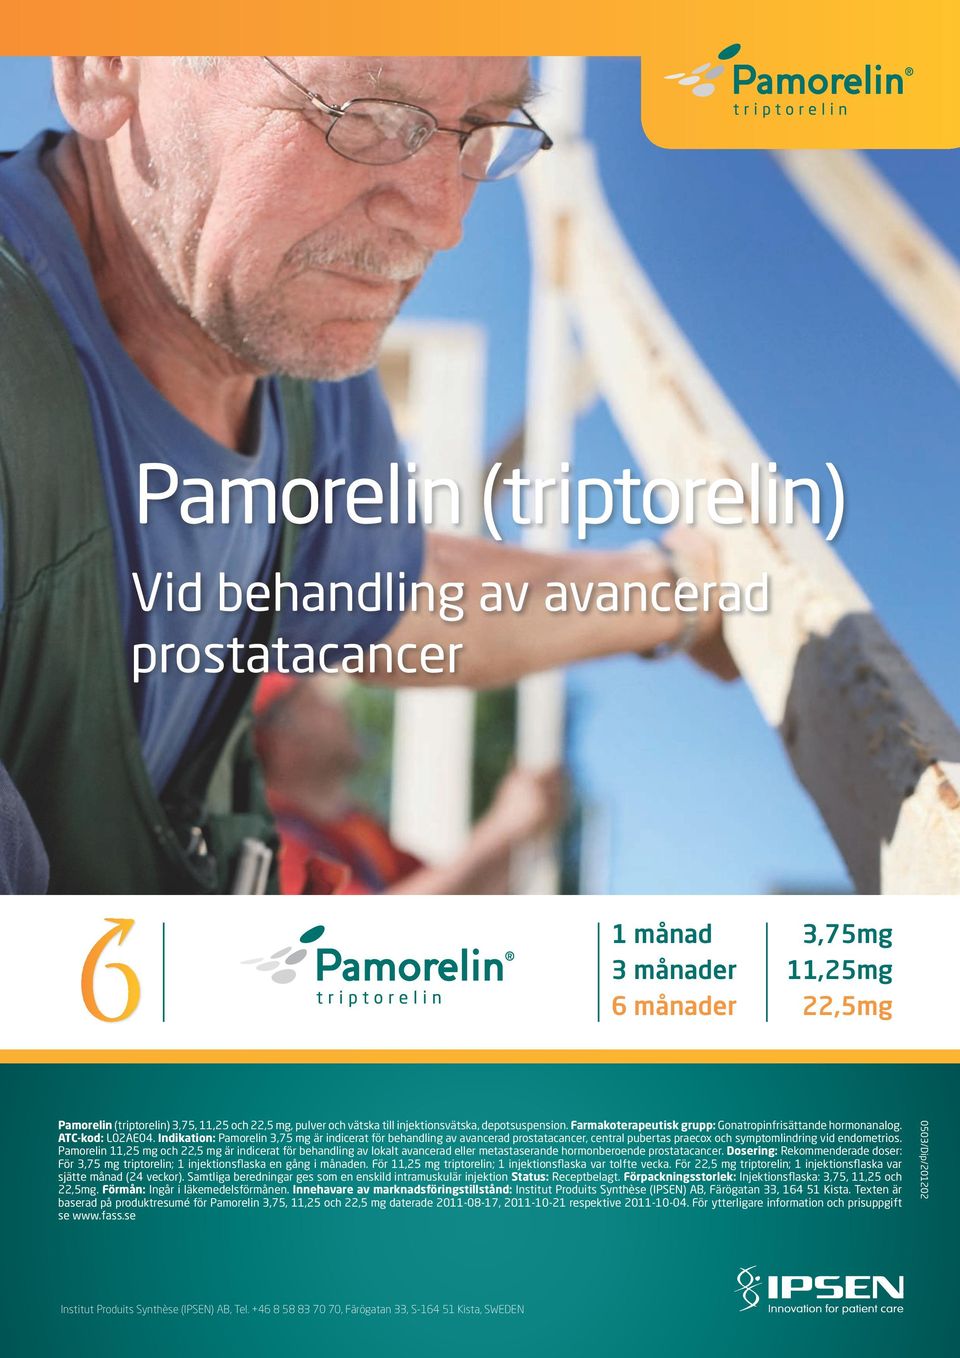 Indikation: Pamorelin 3,75 mg är indicerat för behandling av avancerad prostatacancer, central pubertas praecox och symptomlindring vid endometrios.